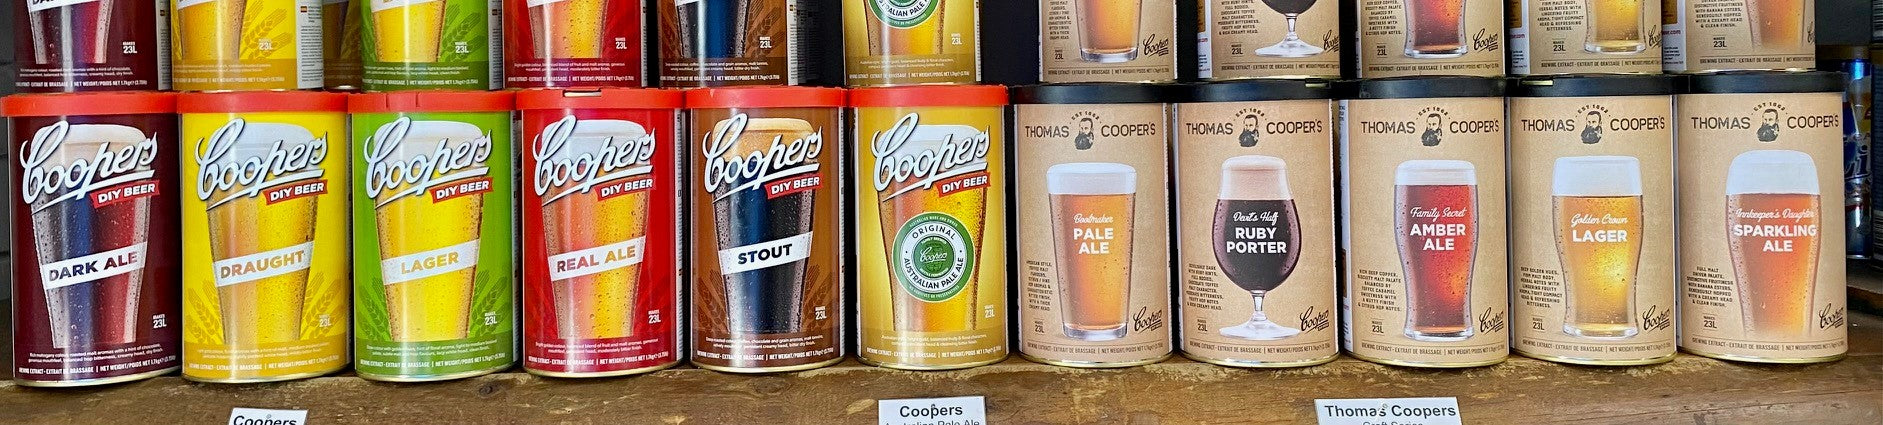 Coopers DIY Beer Kits